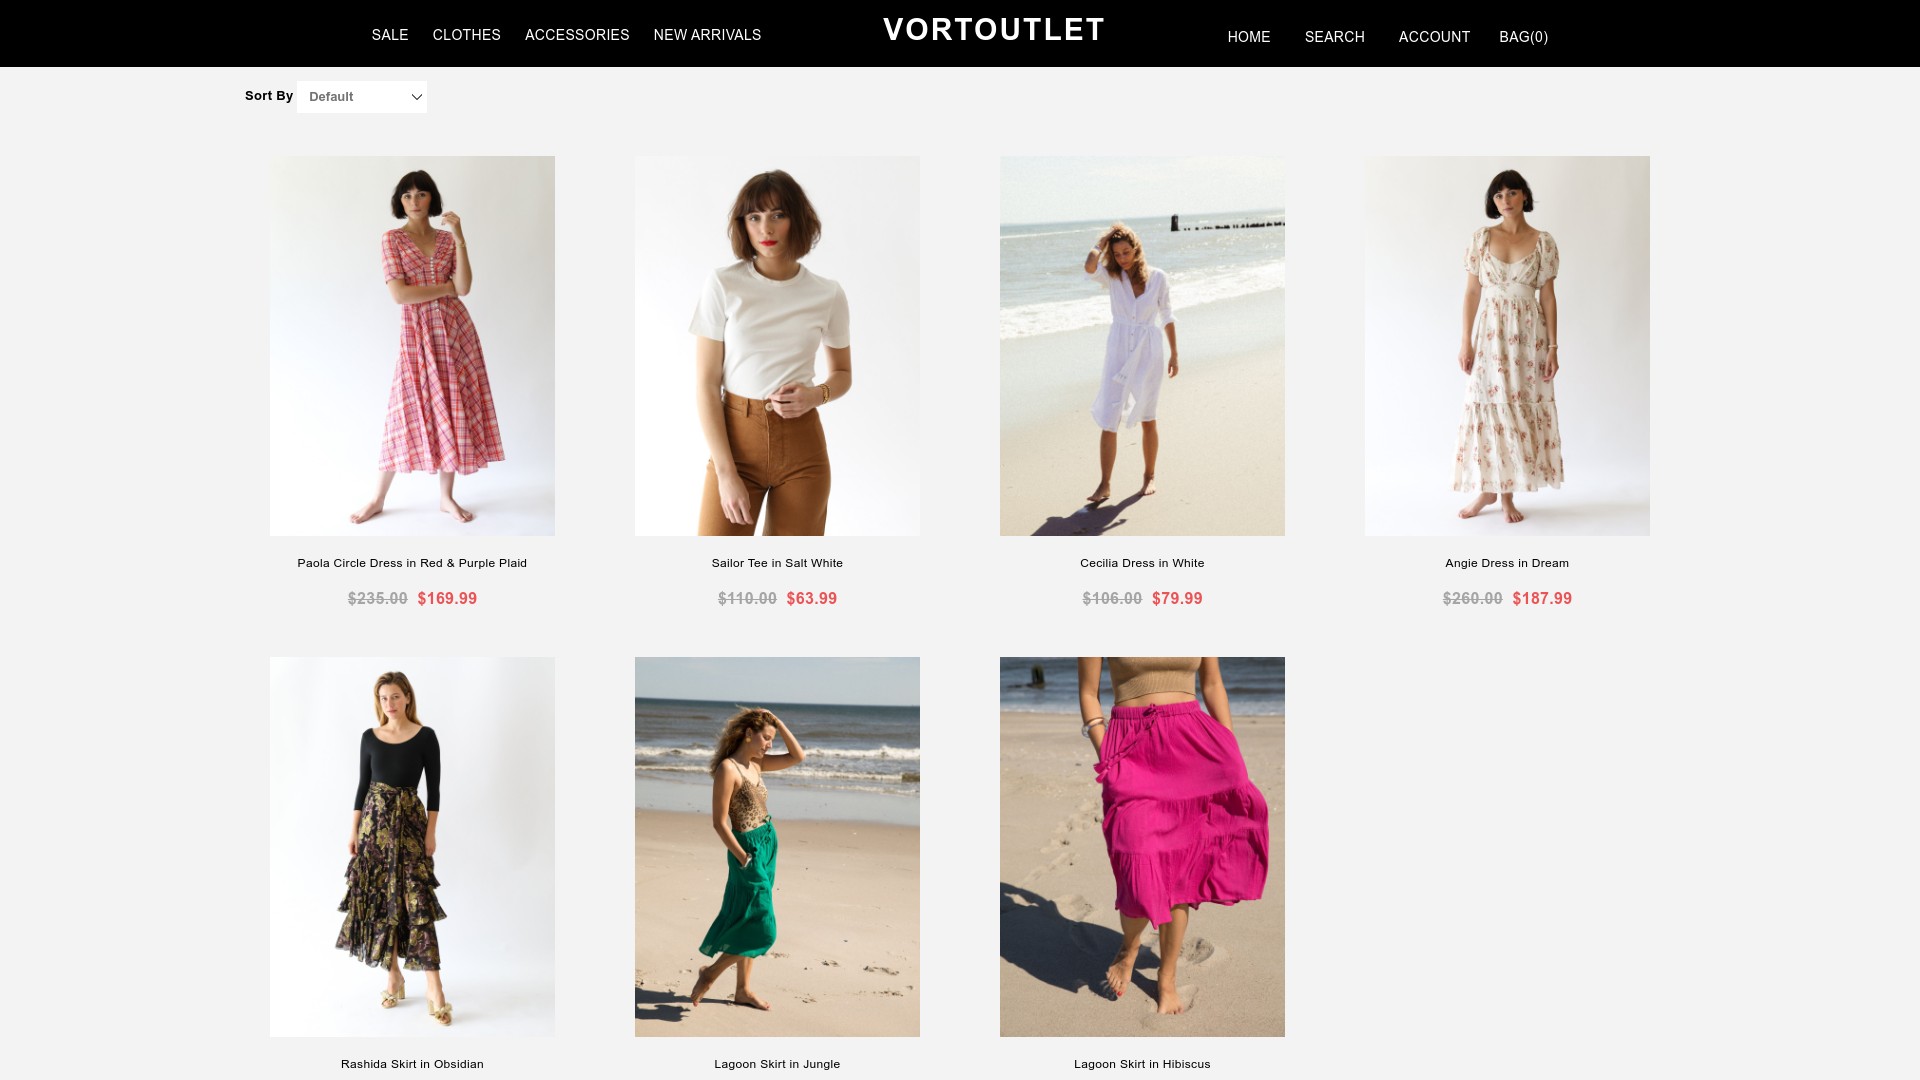 Vortoutlet located at vortoutlet.com